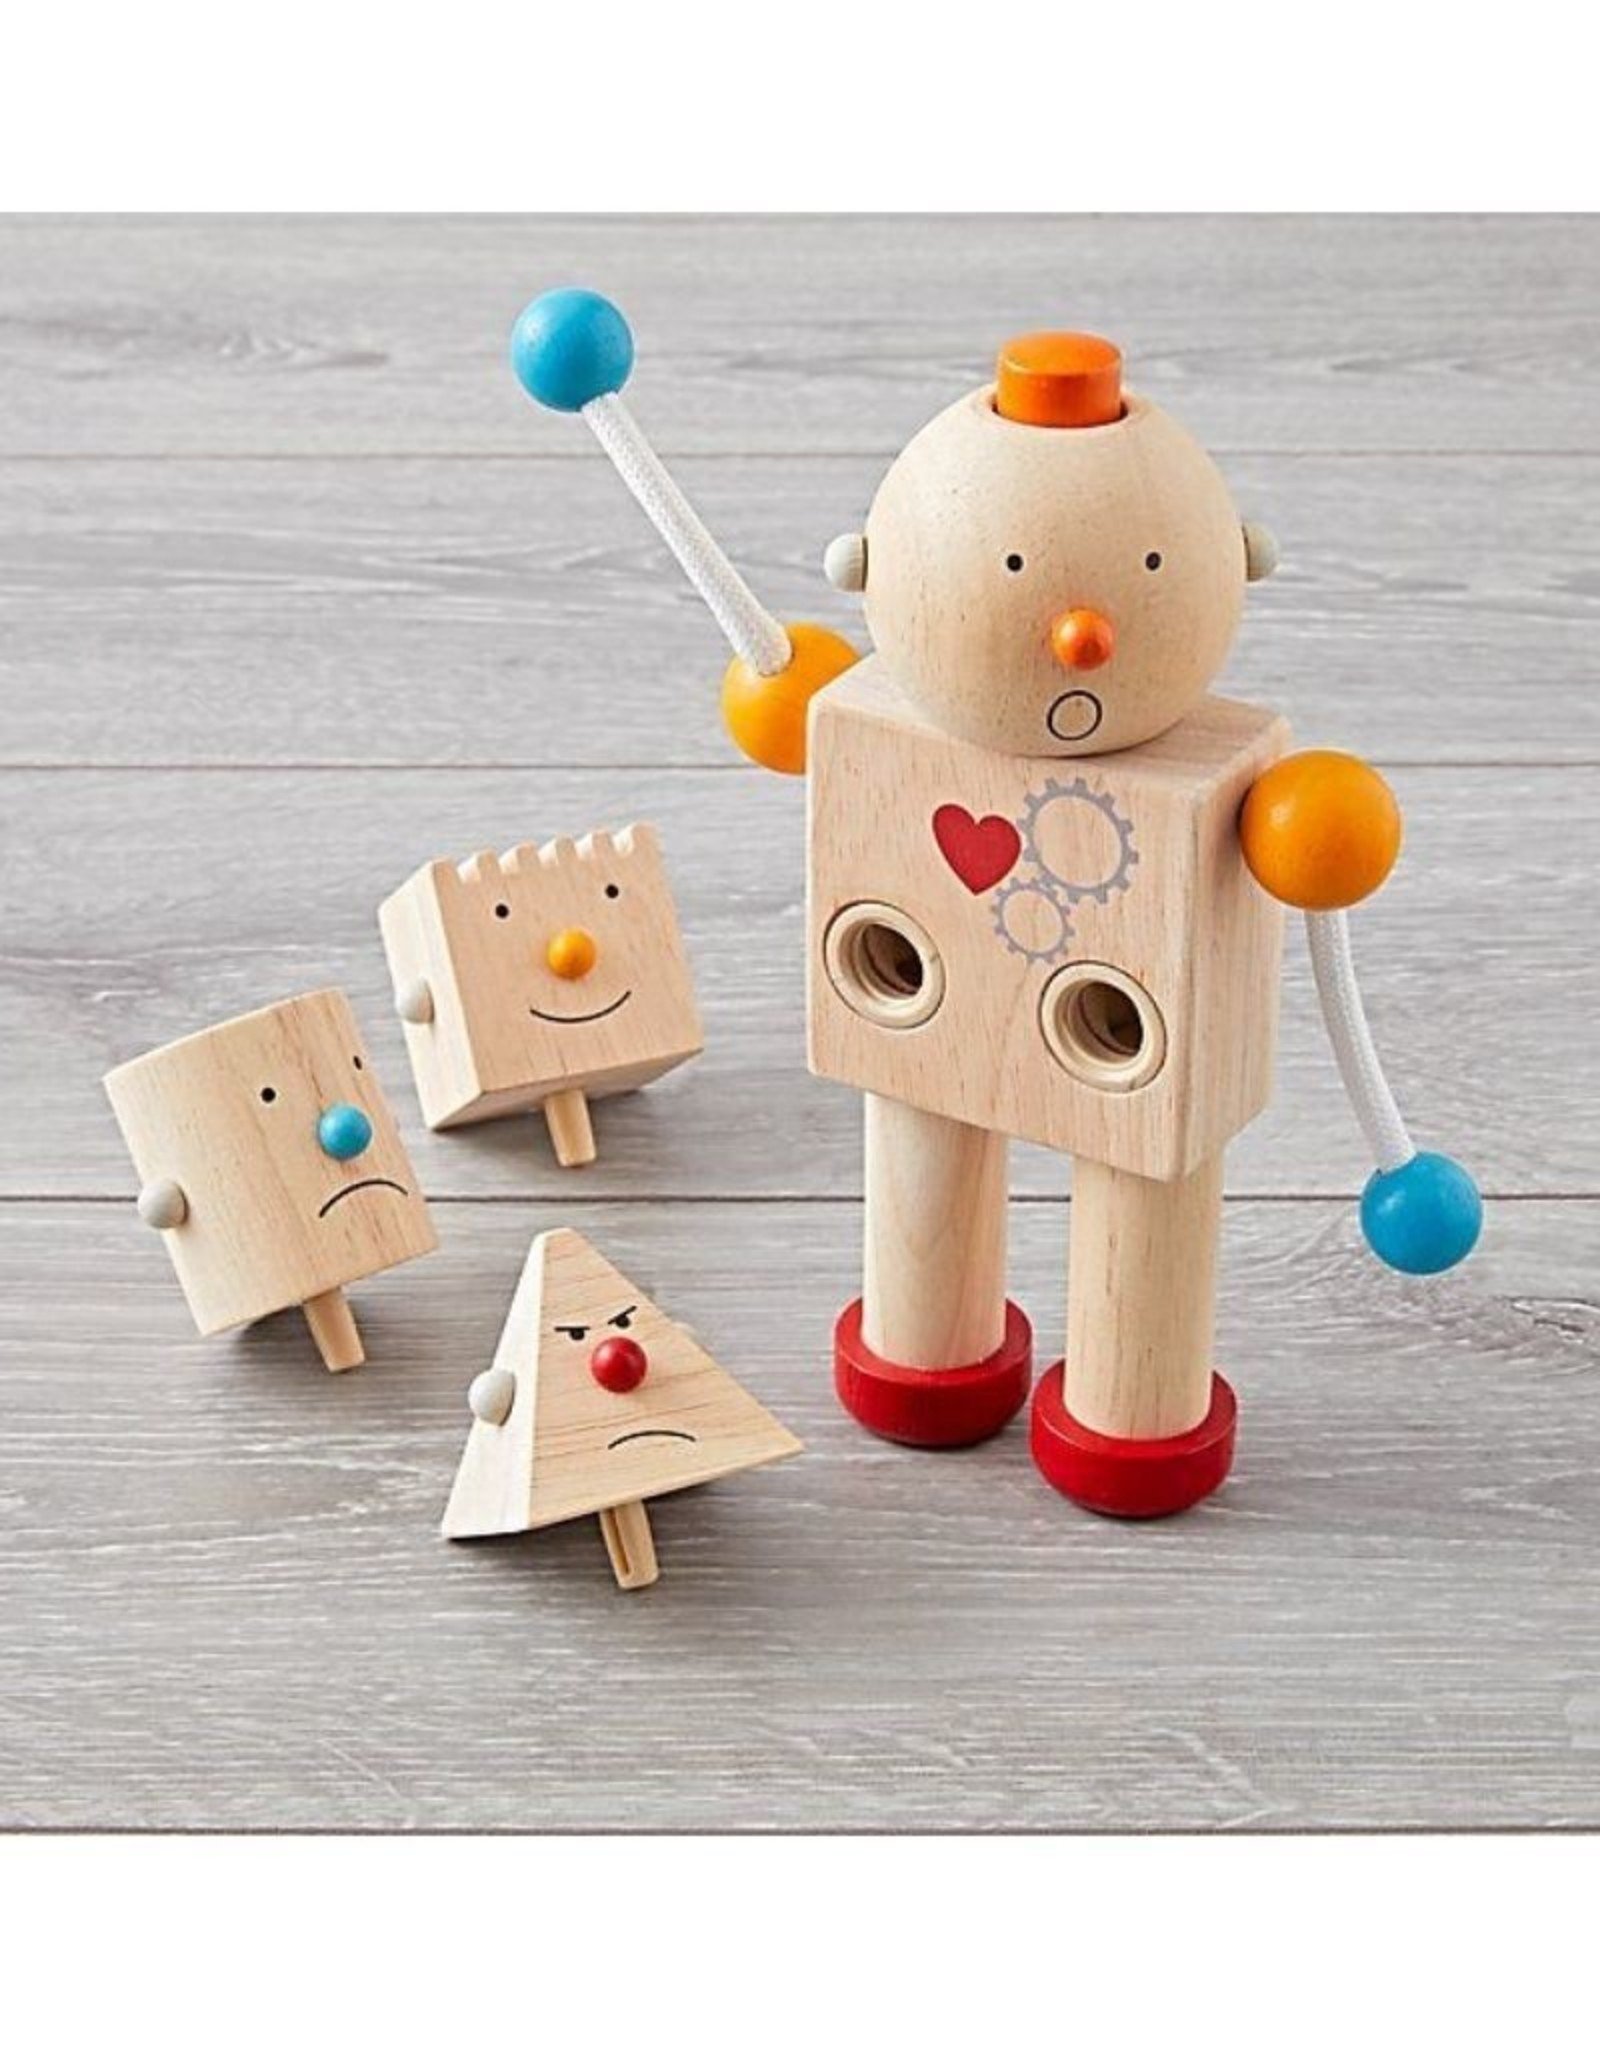 Plan Toys Build a Robot